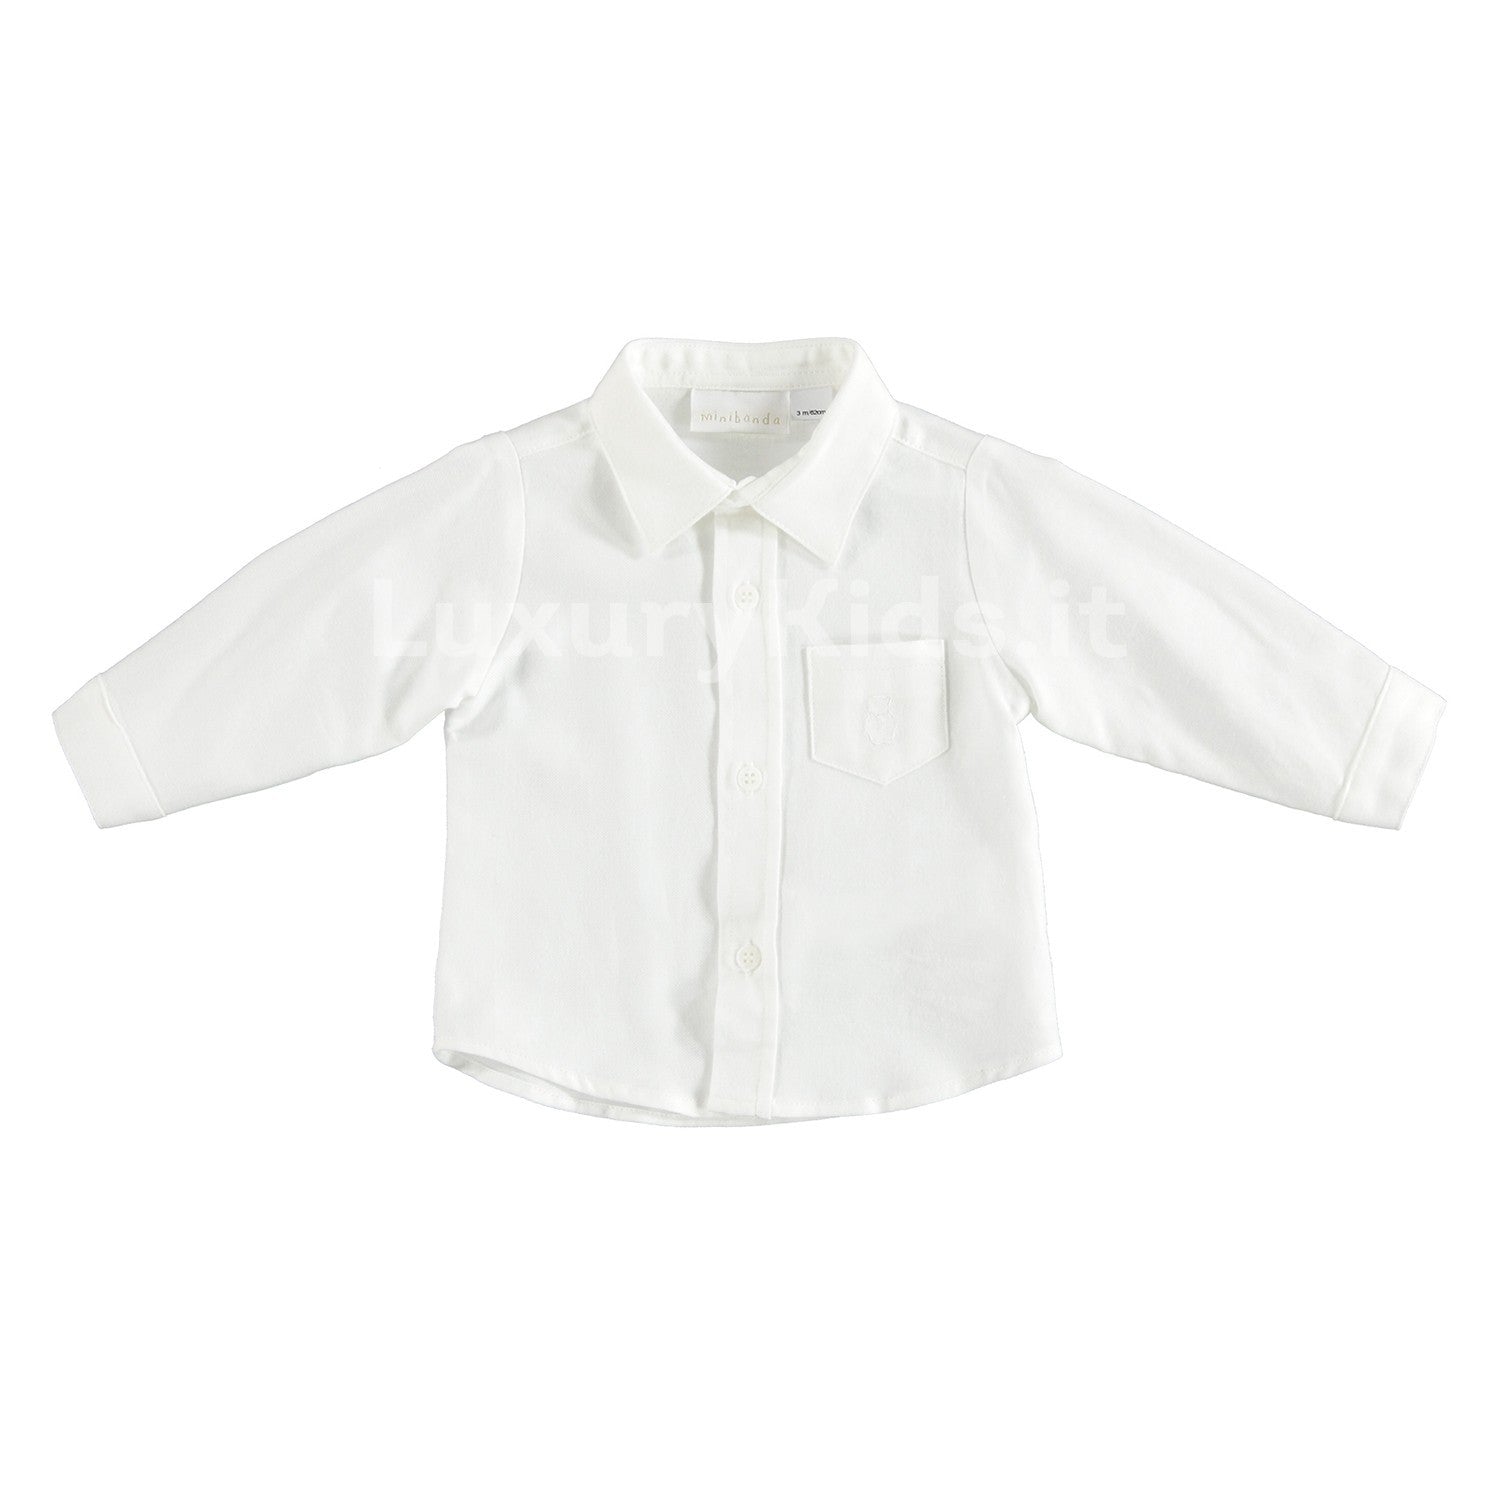 Camicia Elegante Bianco con Taschino Laterale Neonato Minibanda V627 - MINIBANDA - LuxuryKids